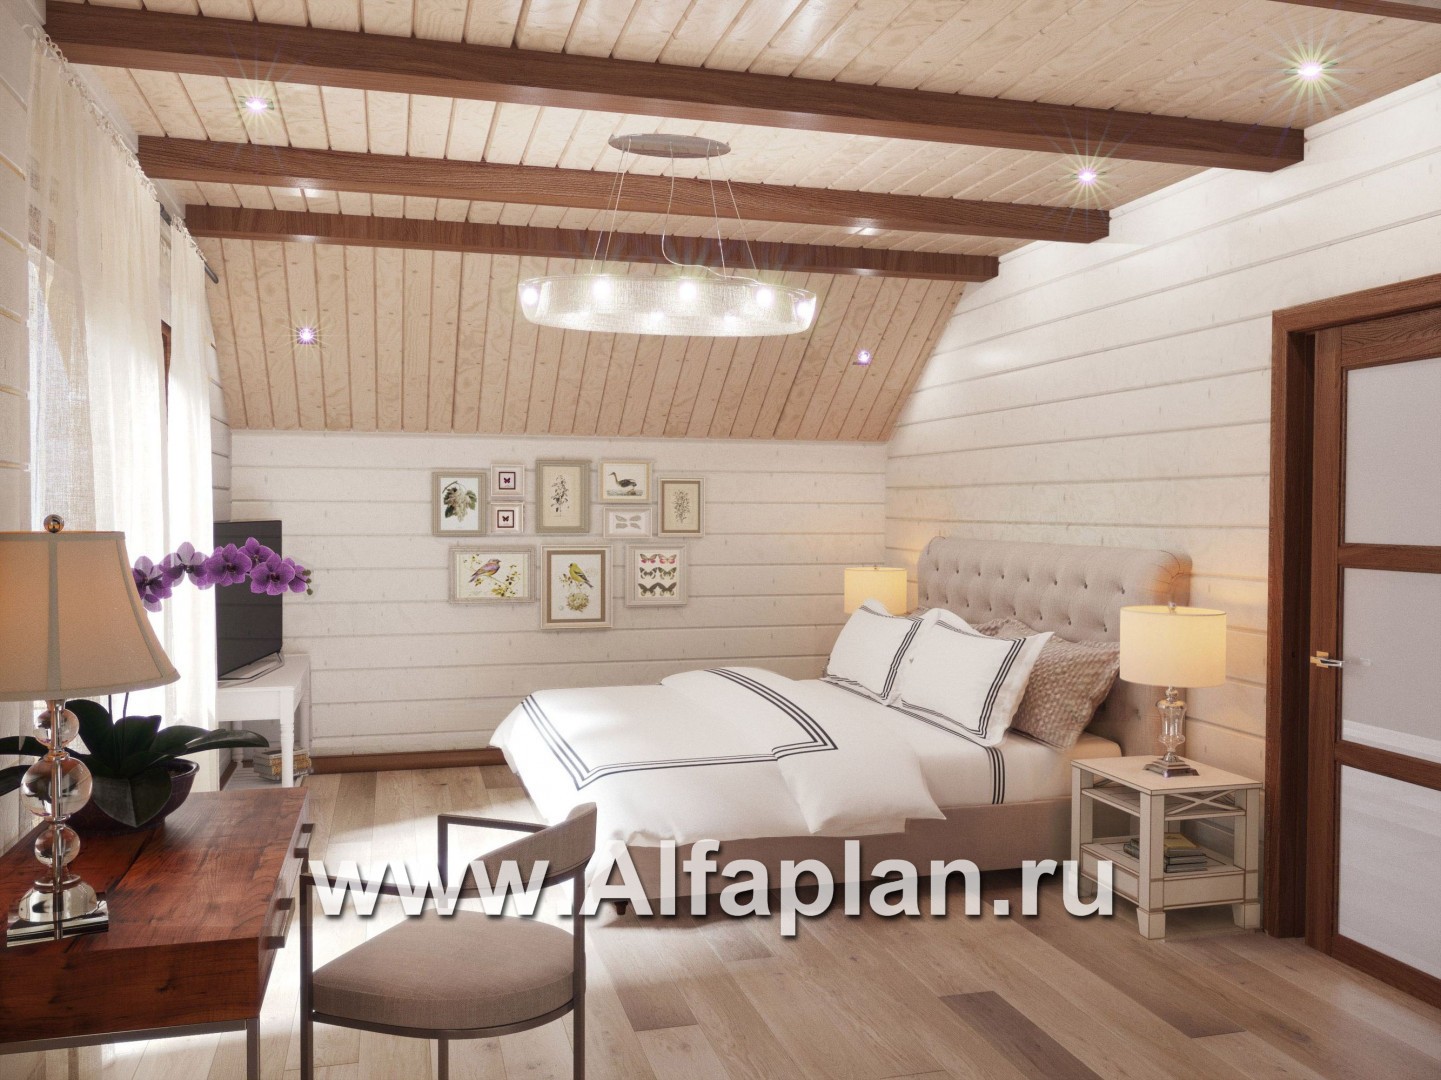 Проекты домов Альфаплан - Проект деревянного дома с гостевым блоком - дополнительное изображение №8